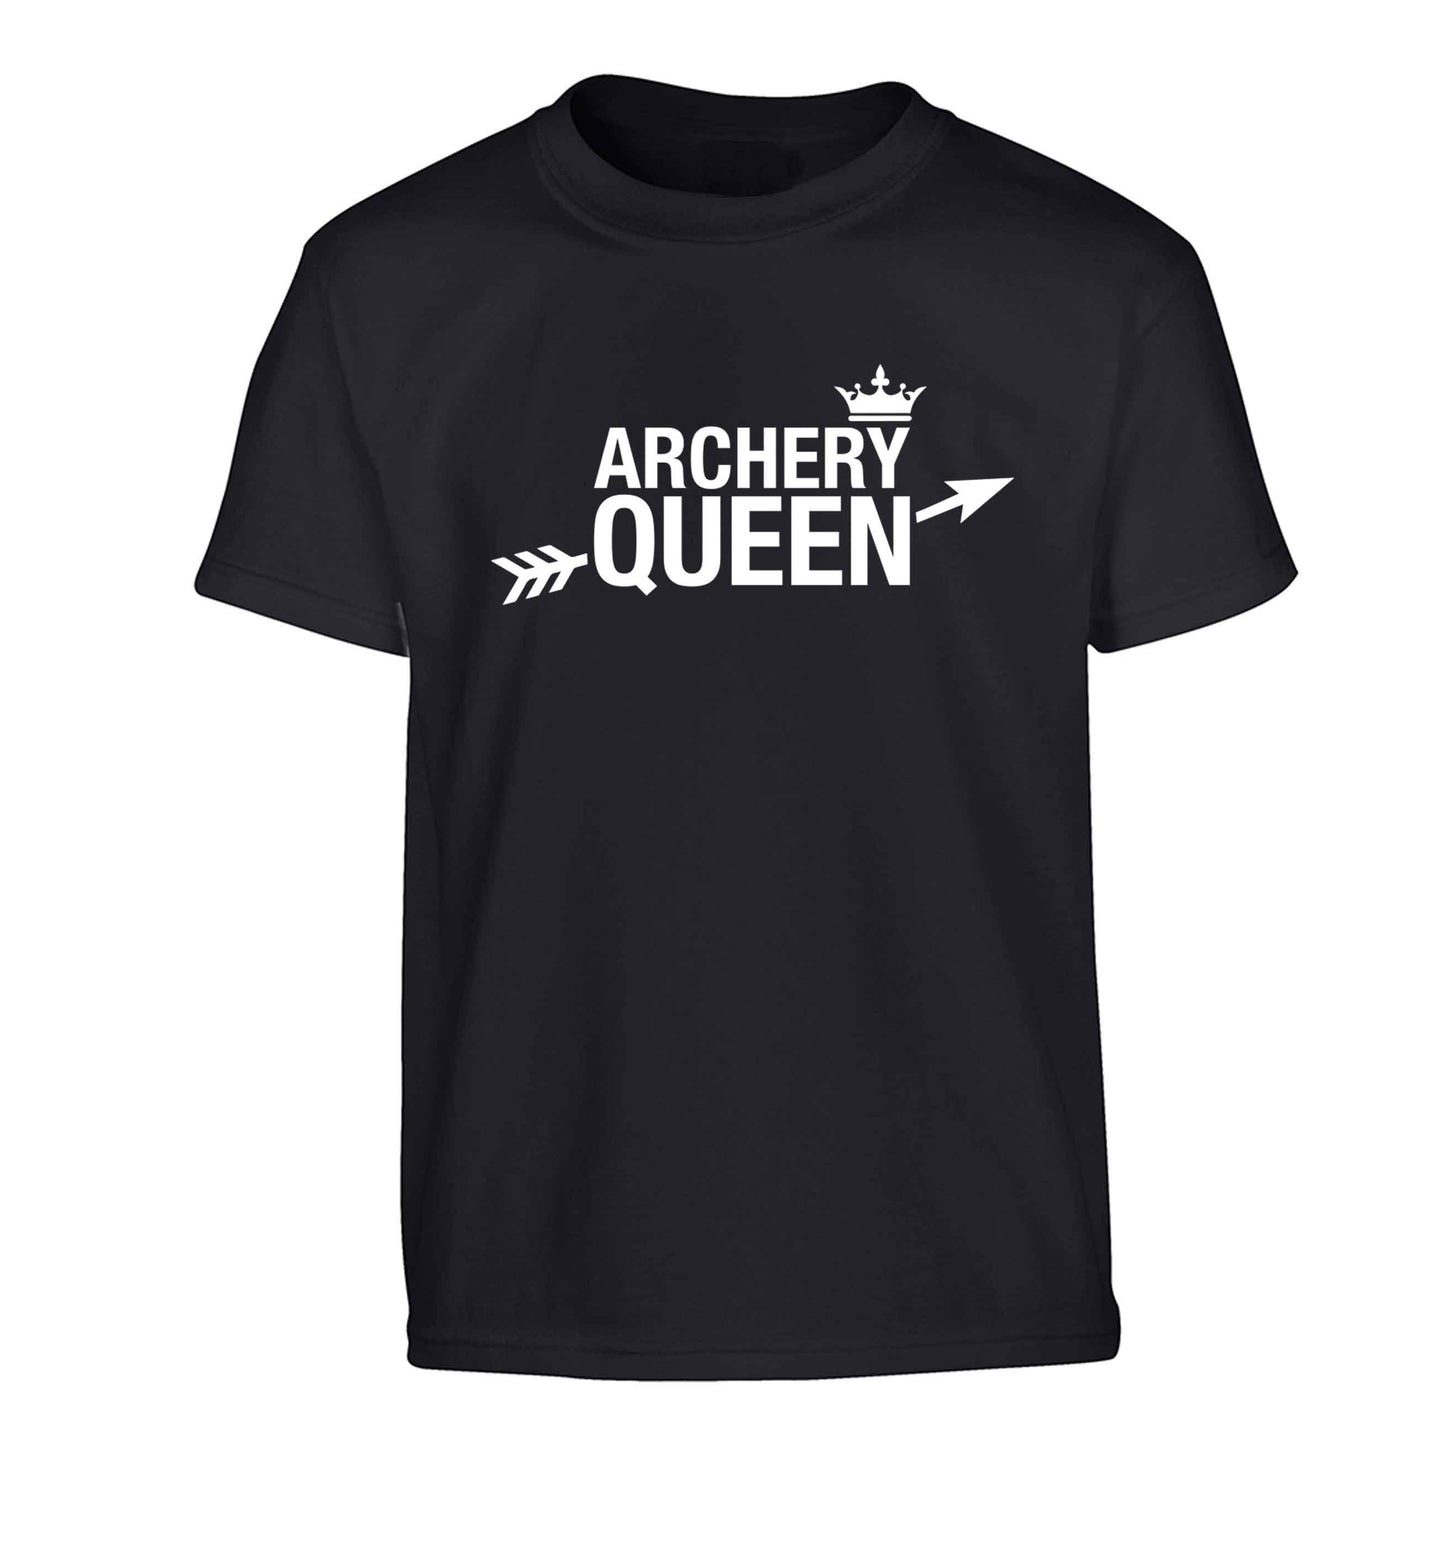 Archery queen Children's black Tshirt 12-13 Years